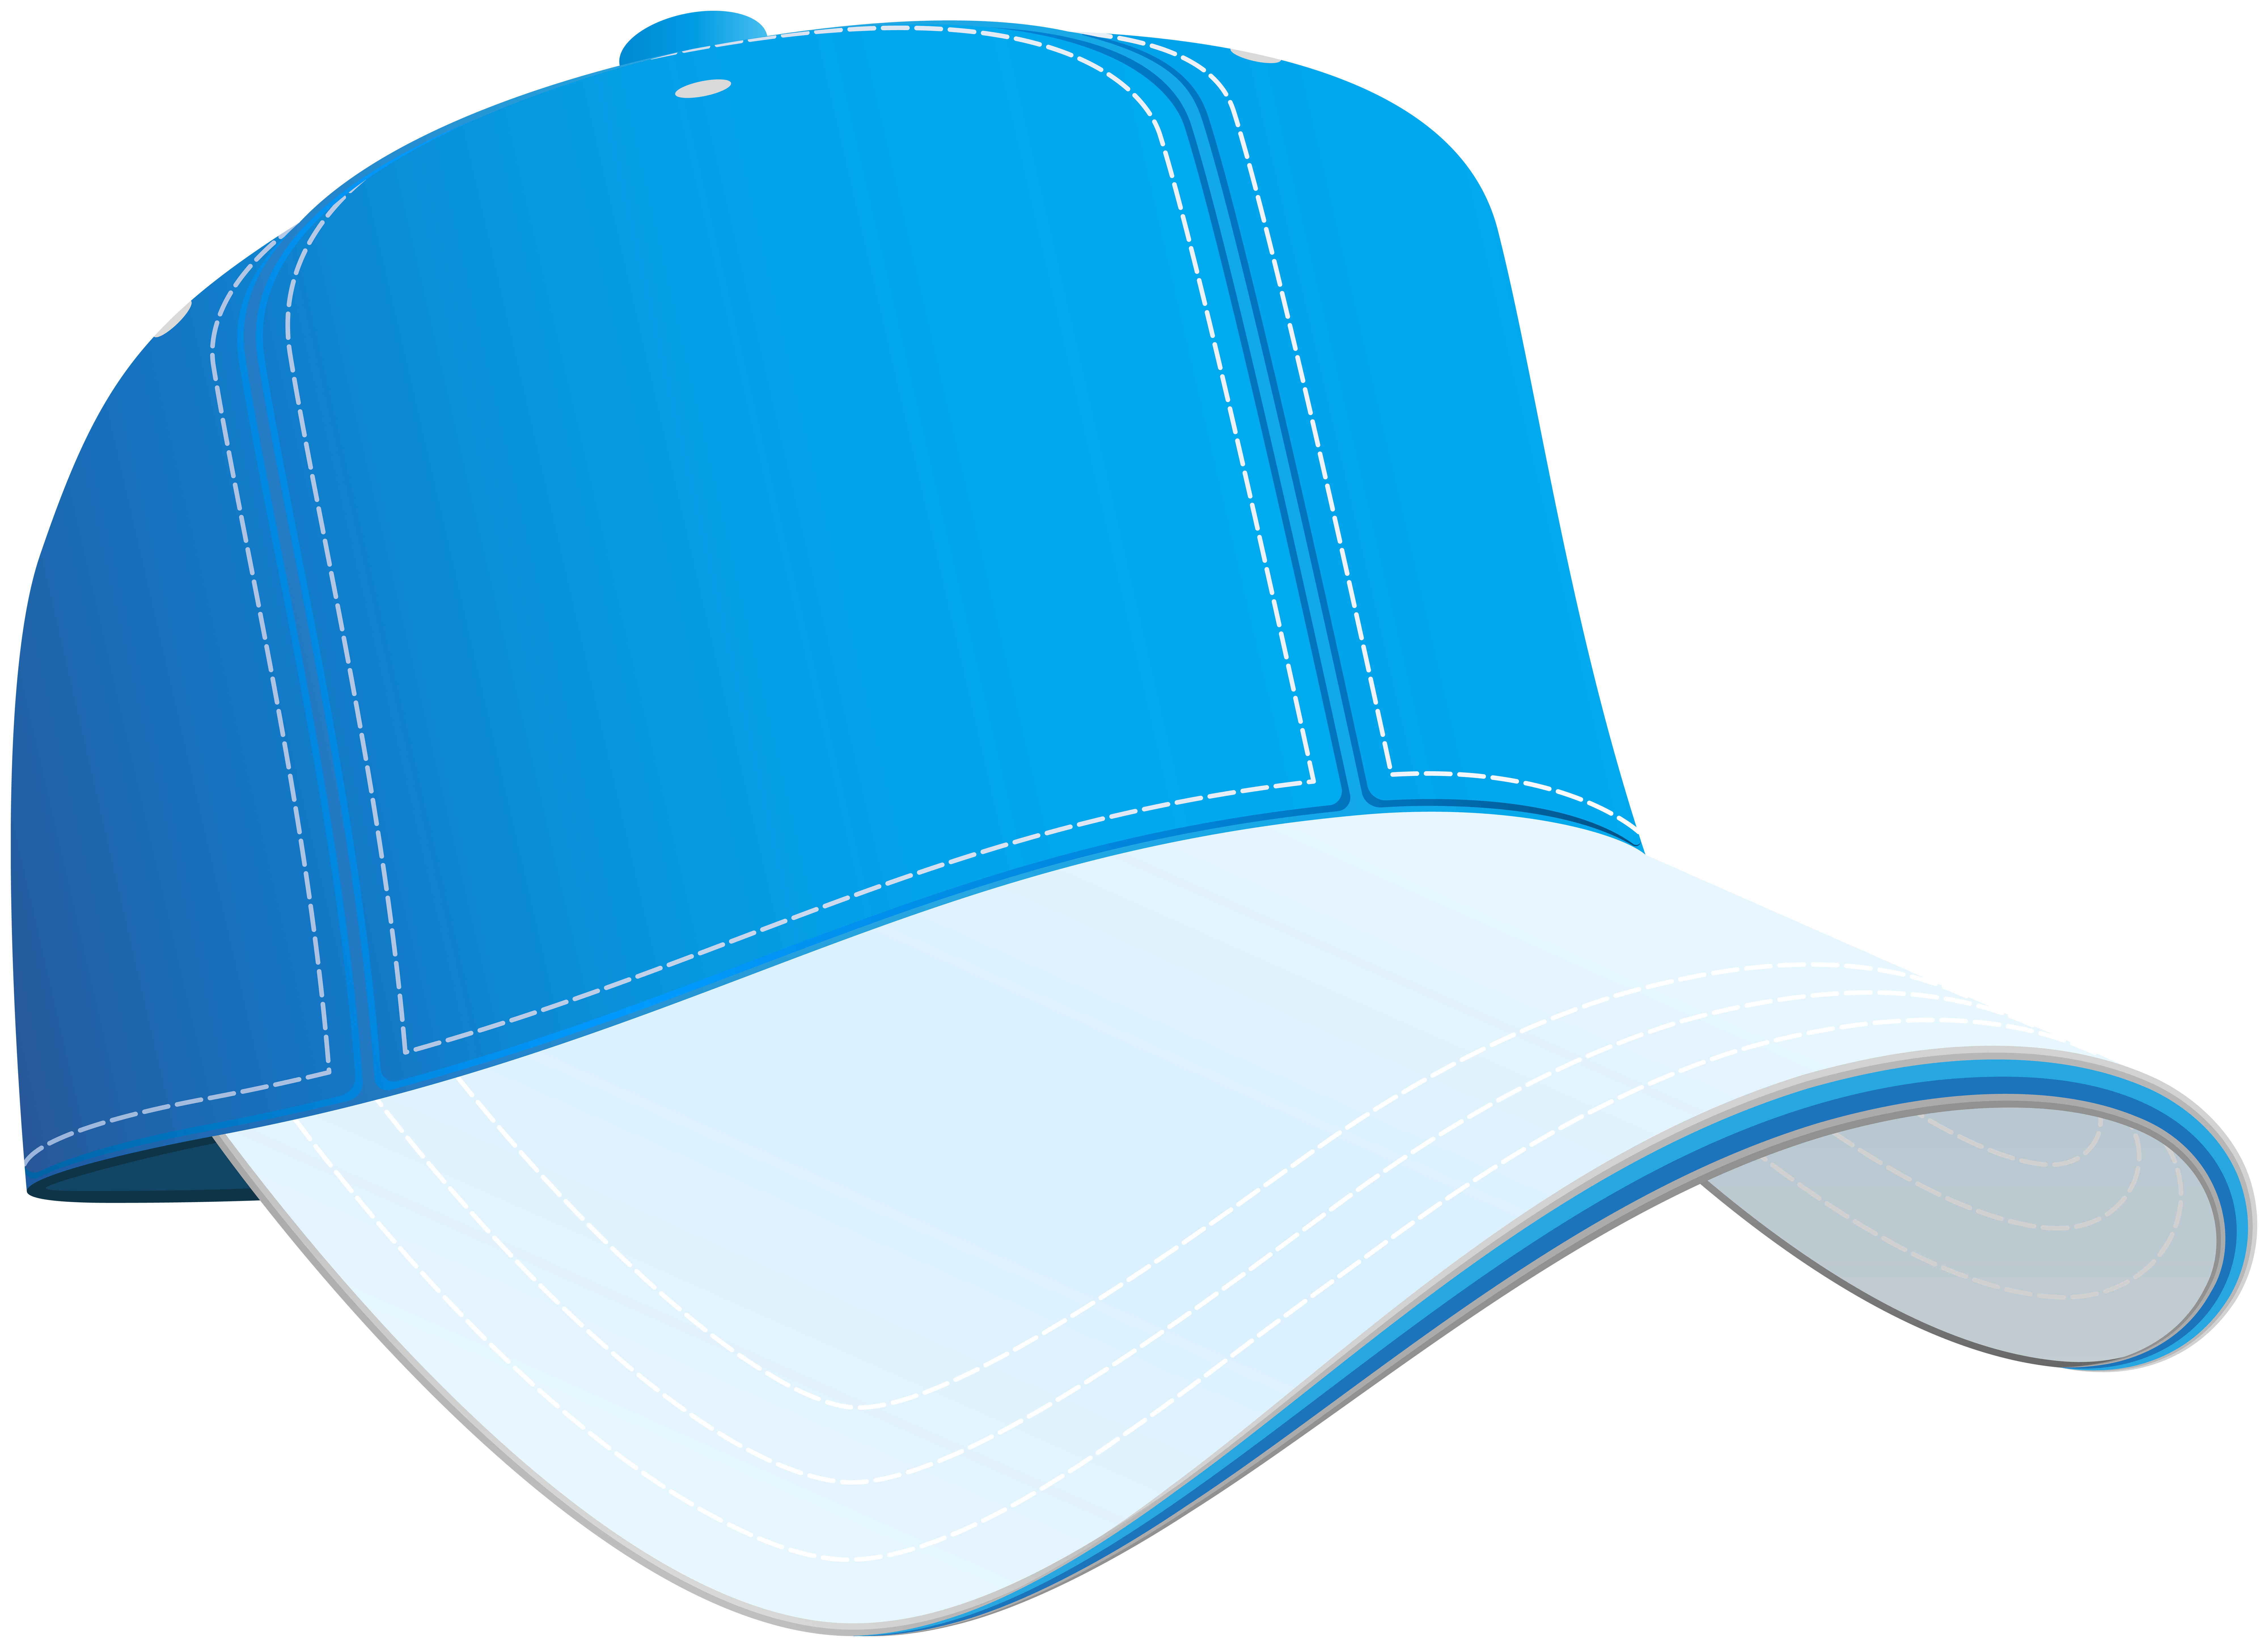 Blue baseball cap.